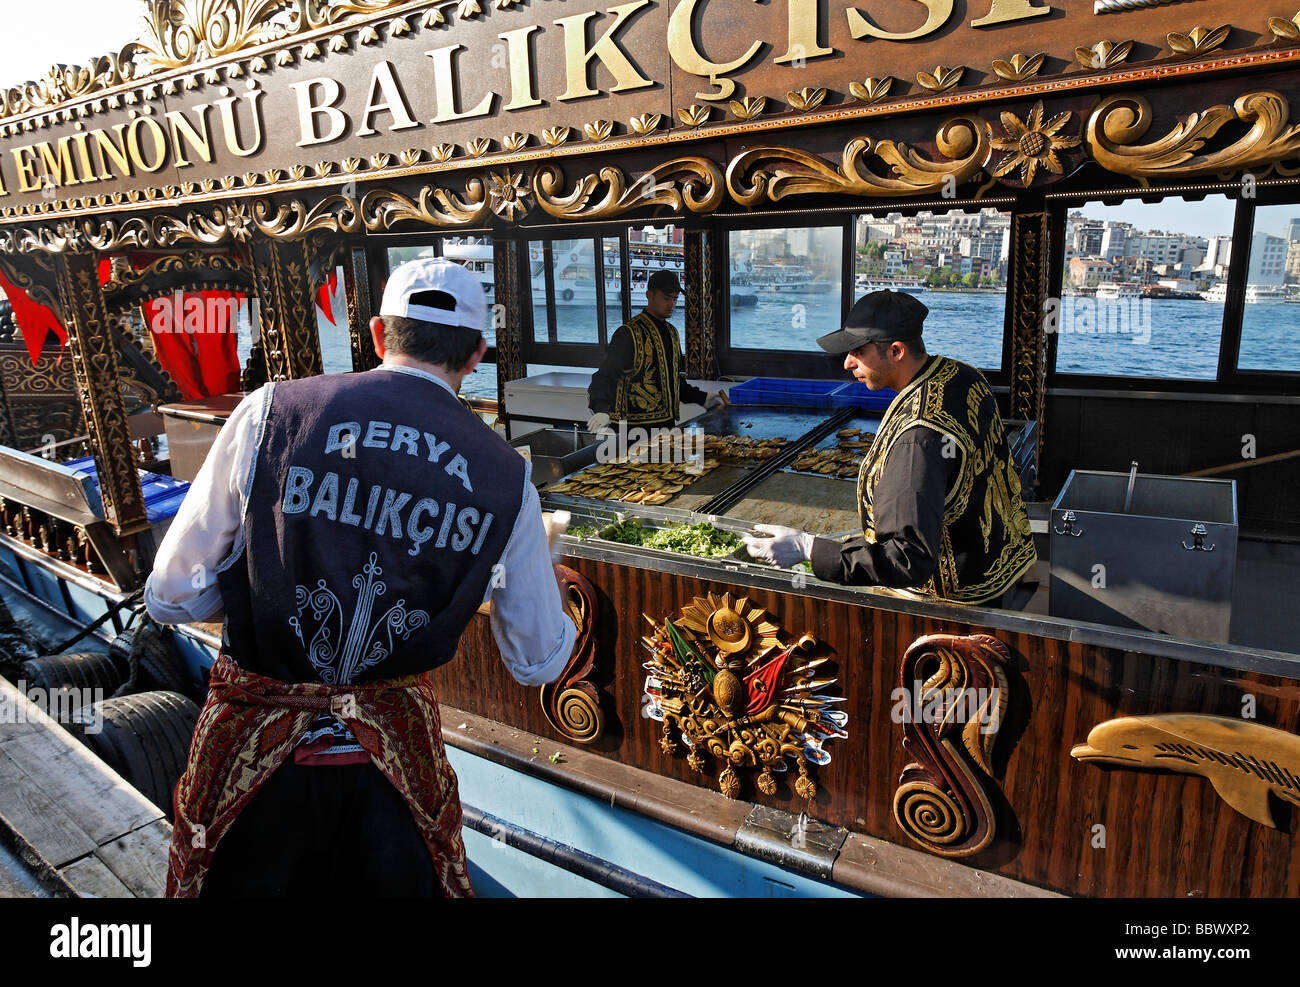 Fisch-Sandwich-Stall auf einem historisch eingerichteten Boot, Goldenes Horn, Eminoenue, Istanbul, Türkei Stockfoto